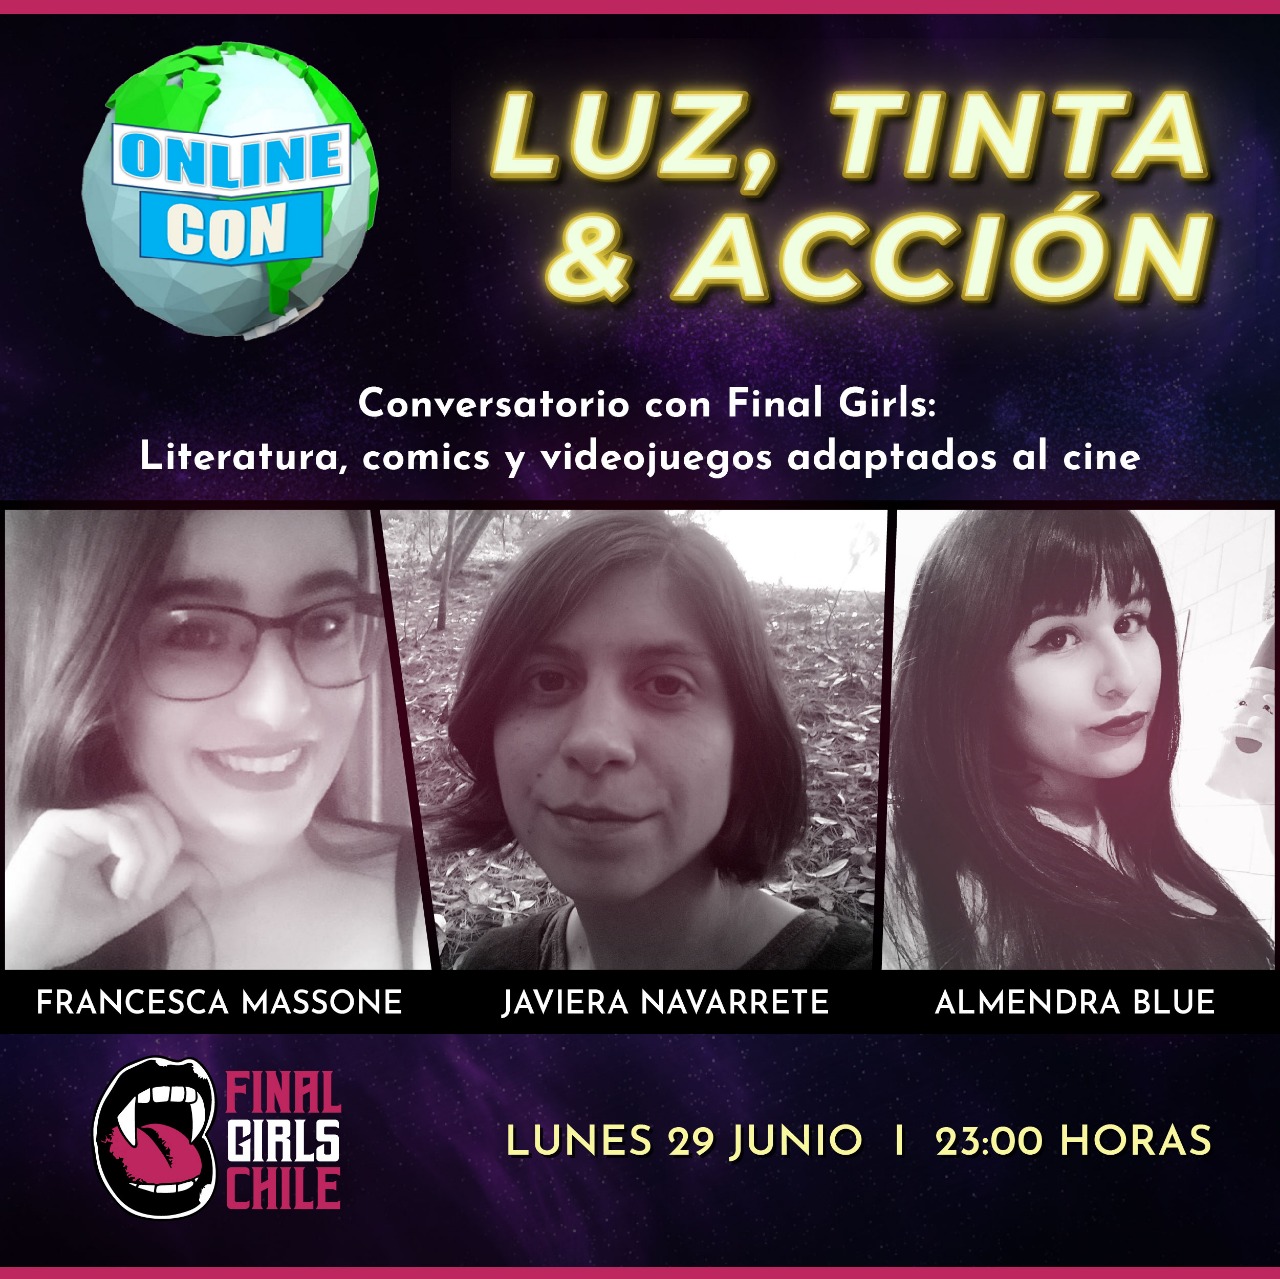  Final Girls Chile estará presente en “Online Con” la primera convención geek online